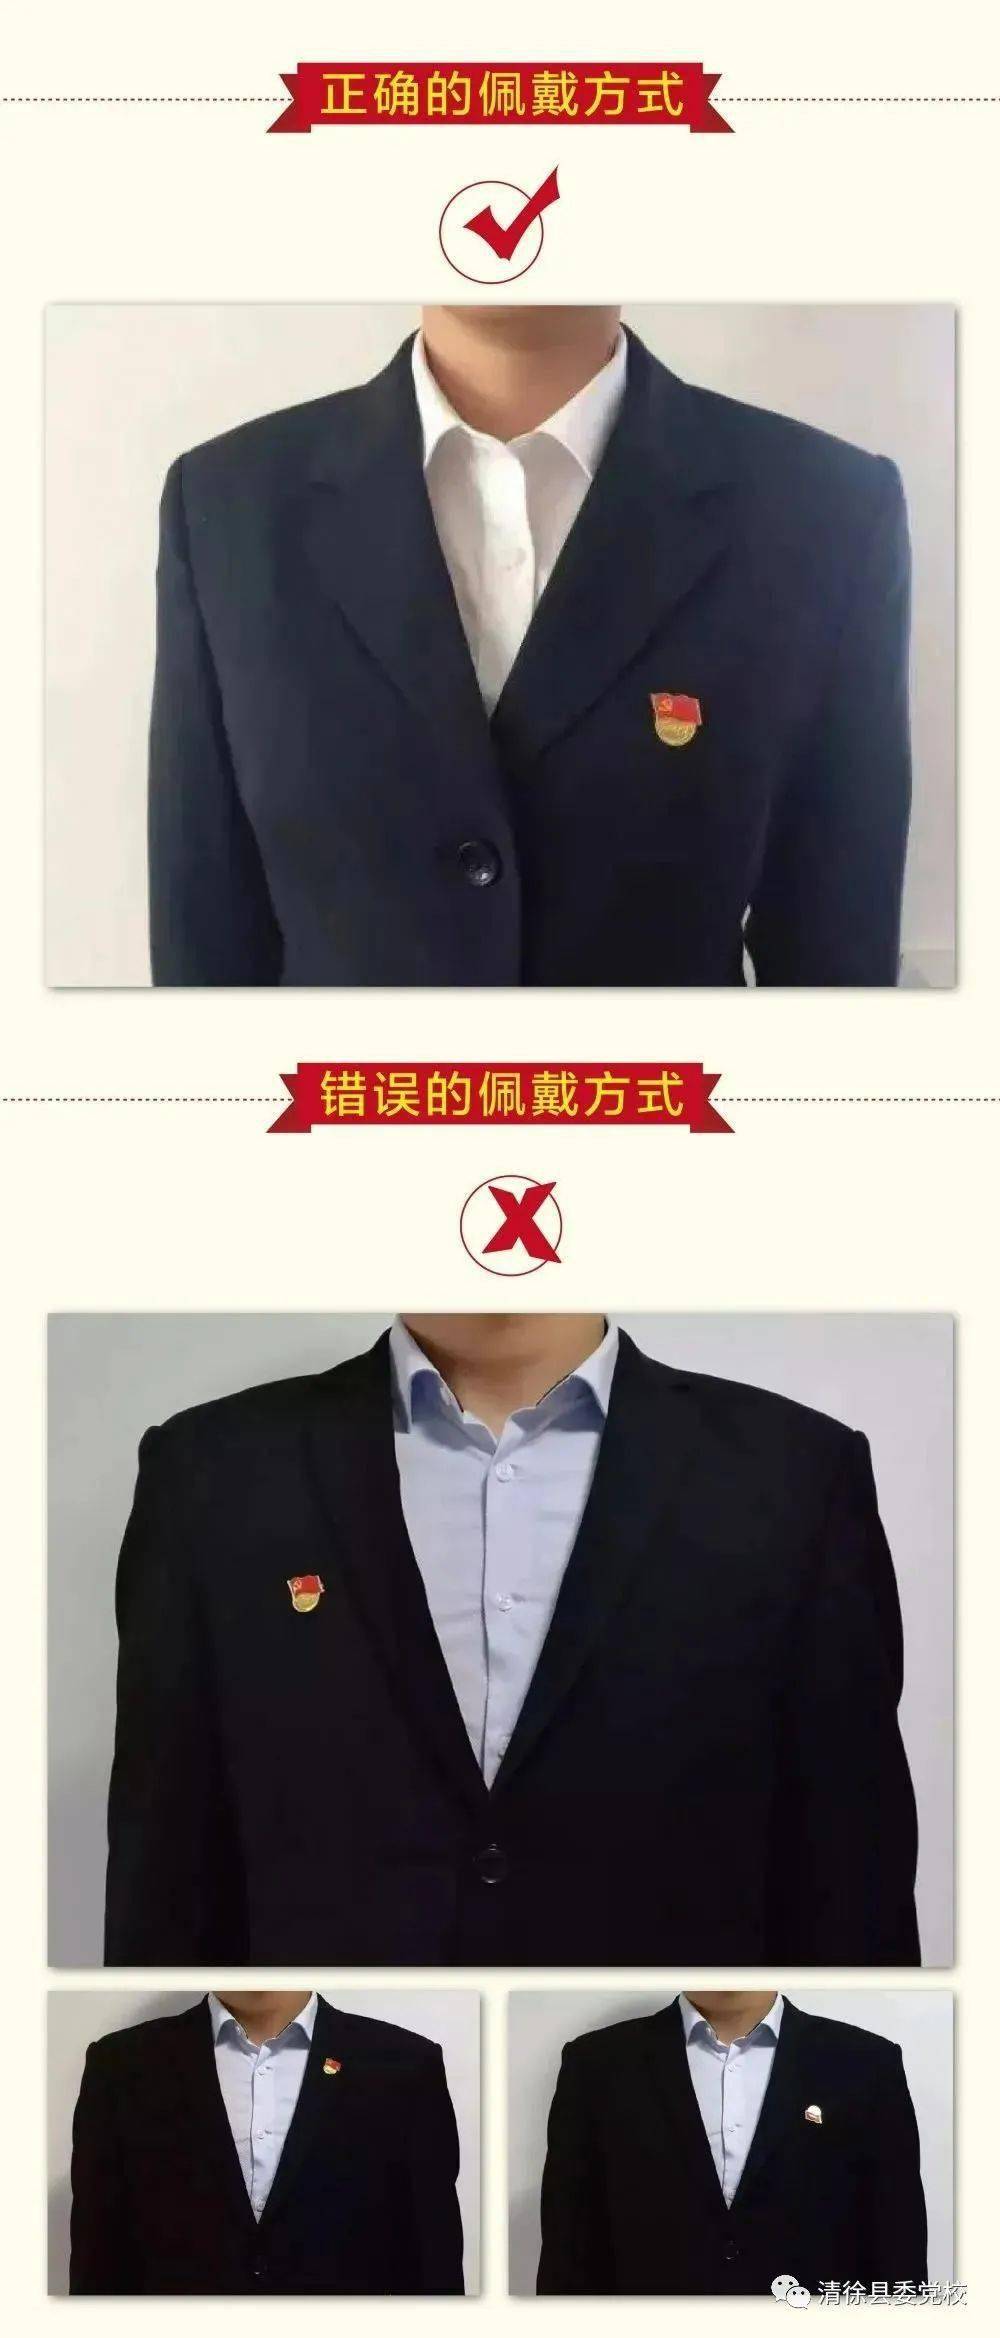 清徐县委党校温馨提示佩戴党员徽章需正规